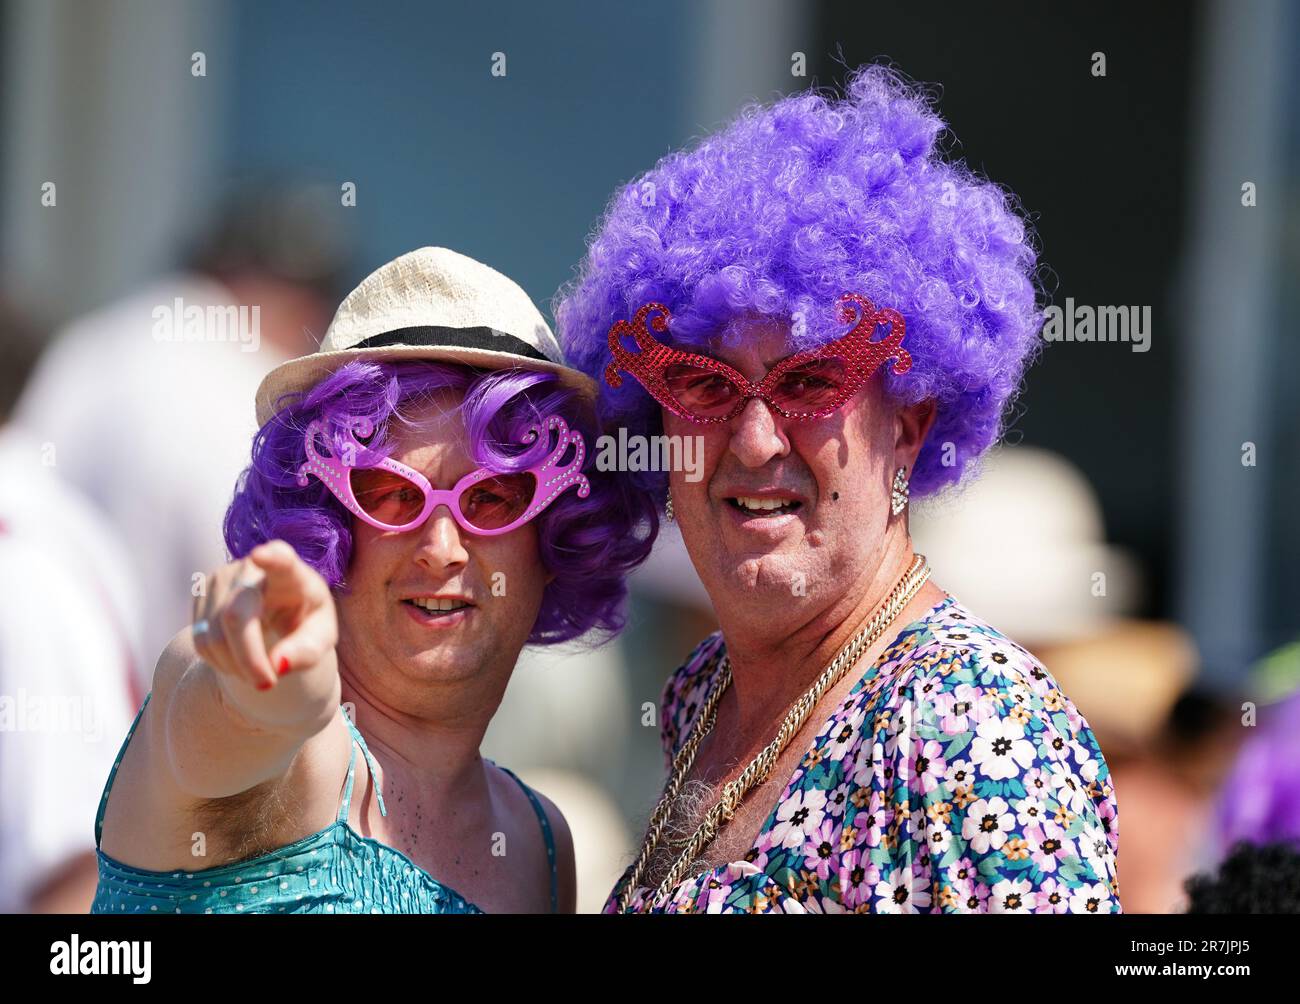 Les fans de cricket en costume de fantaisie le premier jour du match de test des Ashes à Edgbaston, Birmingham. Date de la photo: Vendredi 16 juin 2023. Banque D'Images